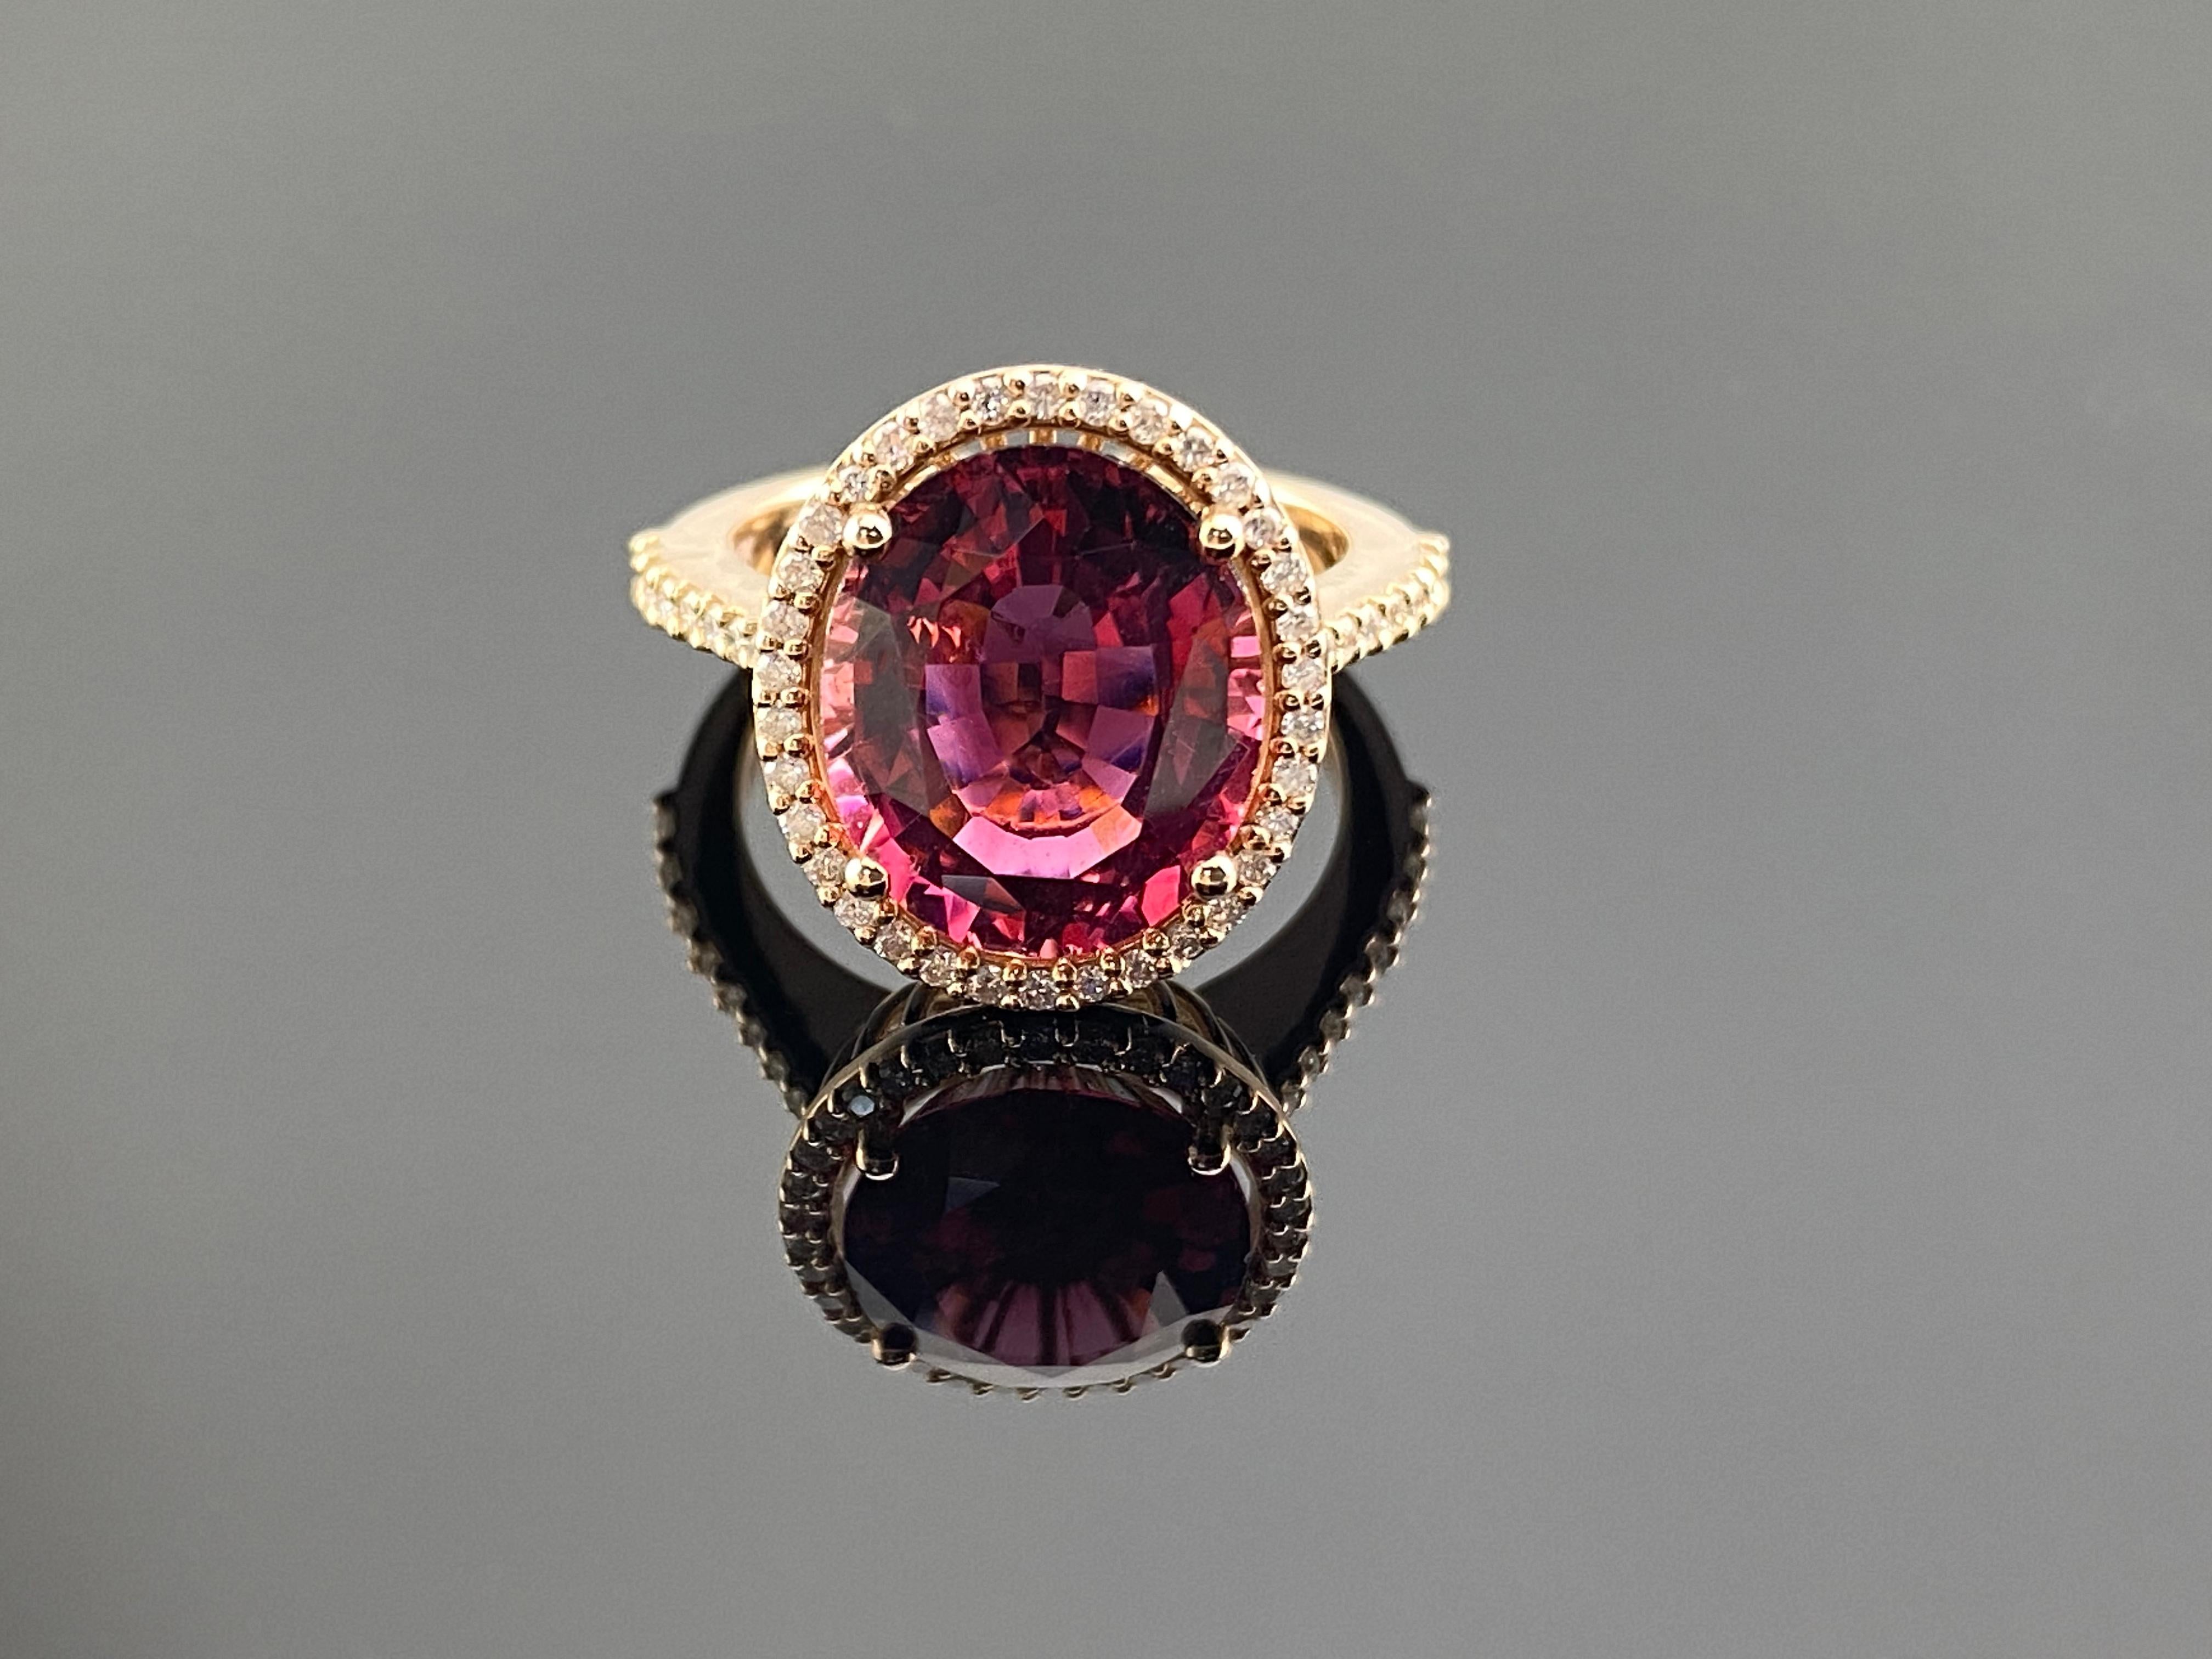 Ein glamouröser Auftritt mit diesem maßgefertigten Ring aus 18 Karat Roségold mit Vintage-Einflüssen, kunstvoll gefertigt und hochglänzend poliert. Ein großer rosafarbener Rubellit von 5,03 Karat schmiegt sich in eine sichere Zackenfassung in der